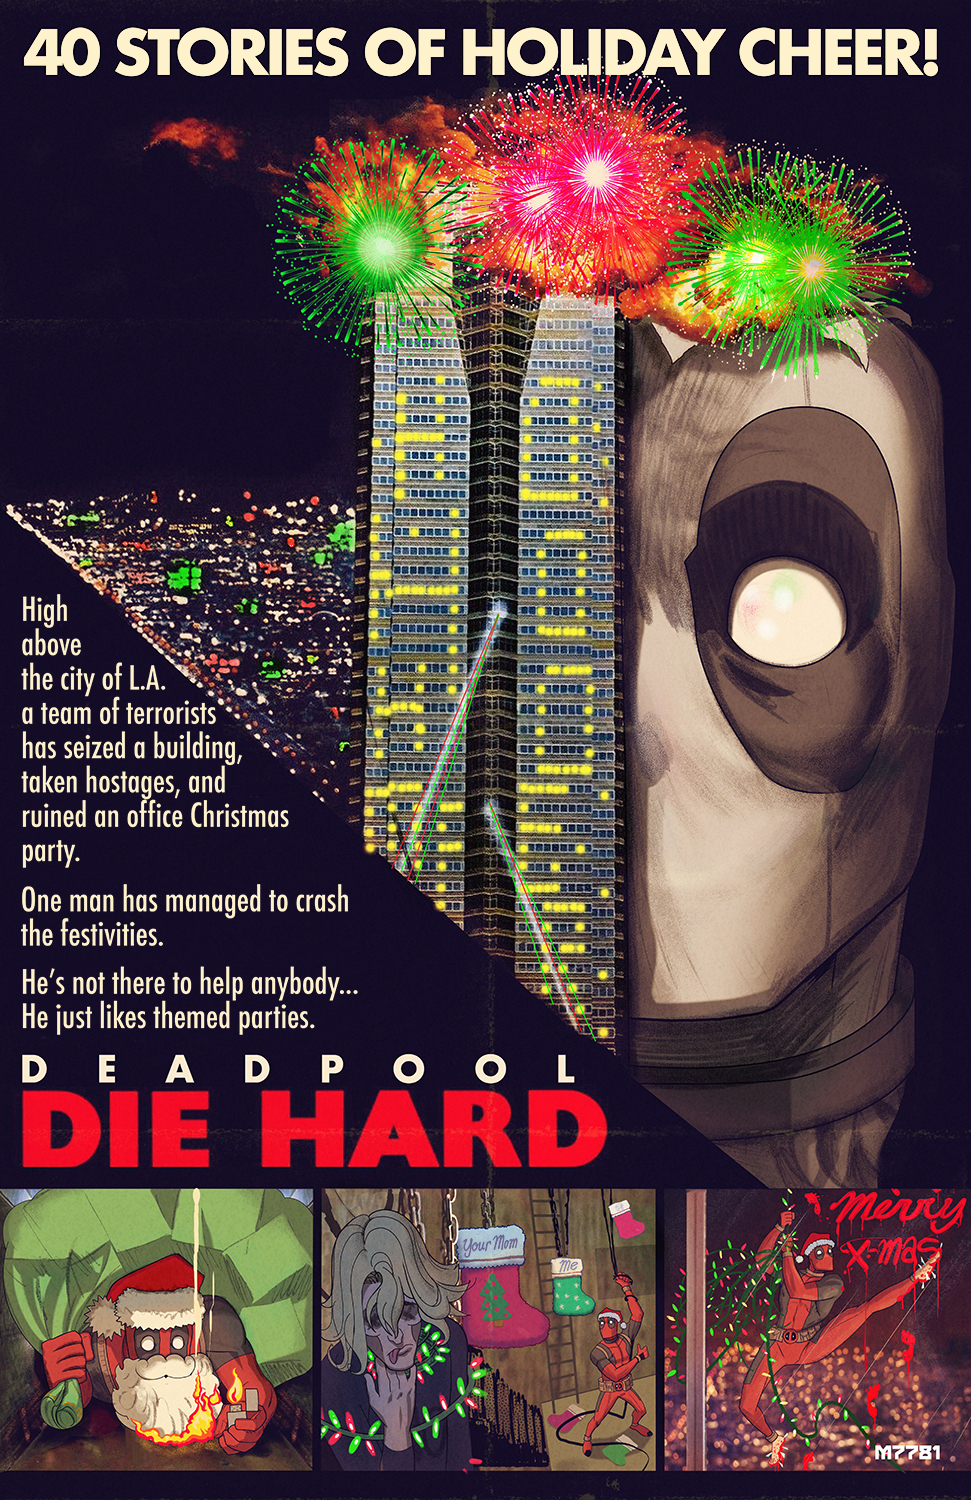 Deadpool die hard